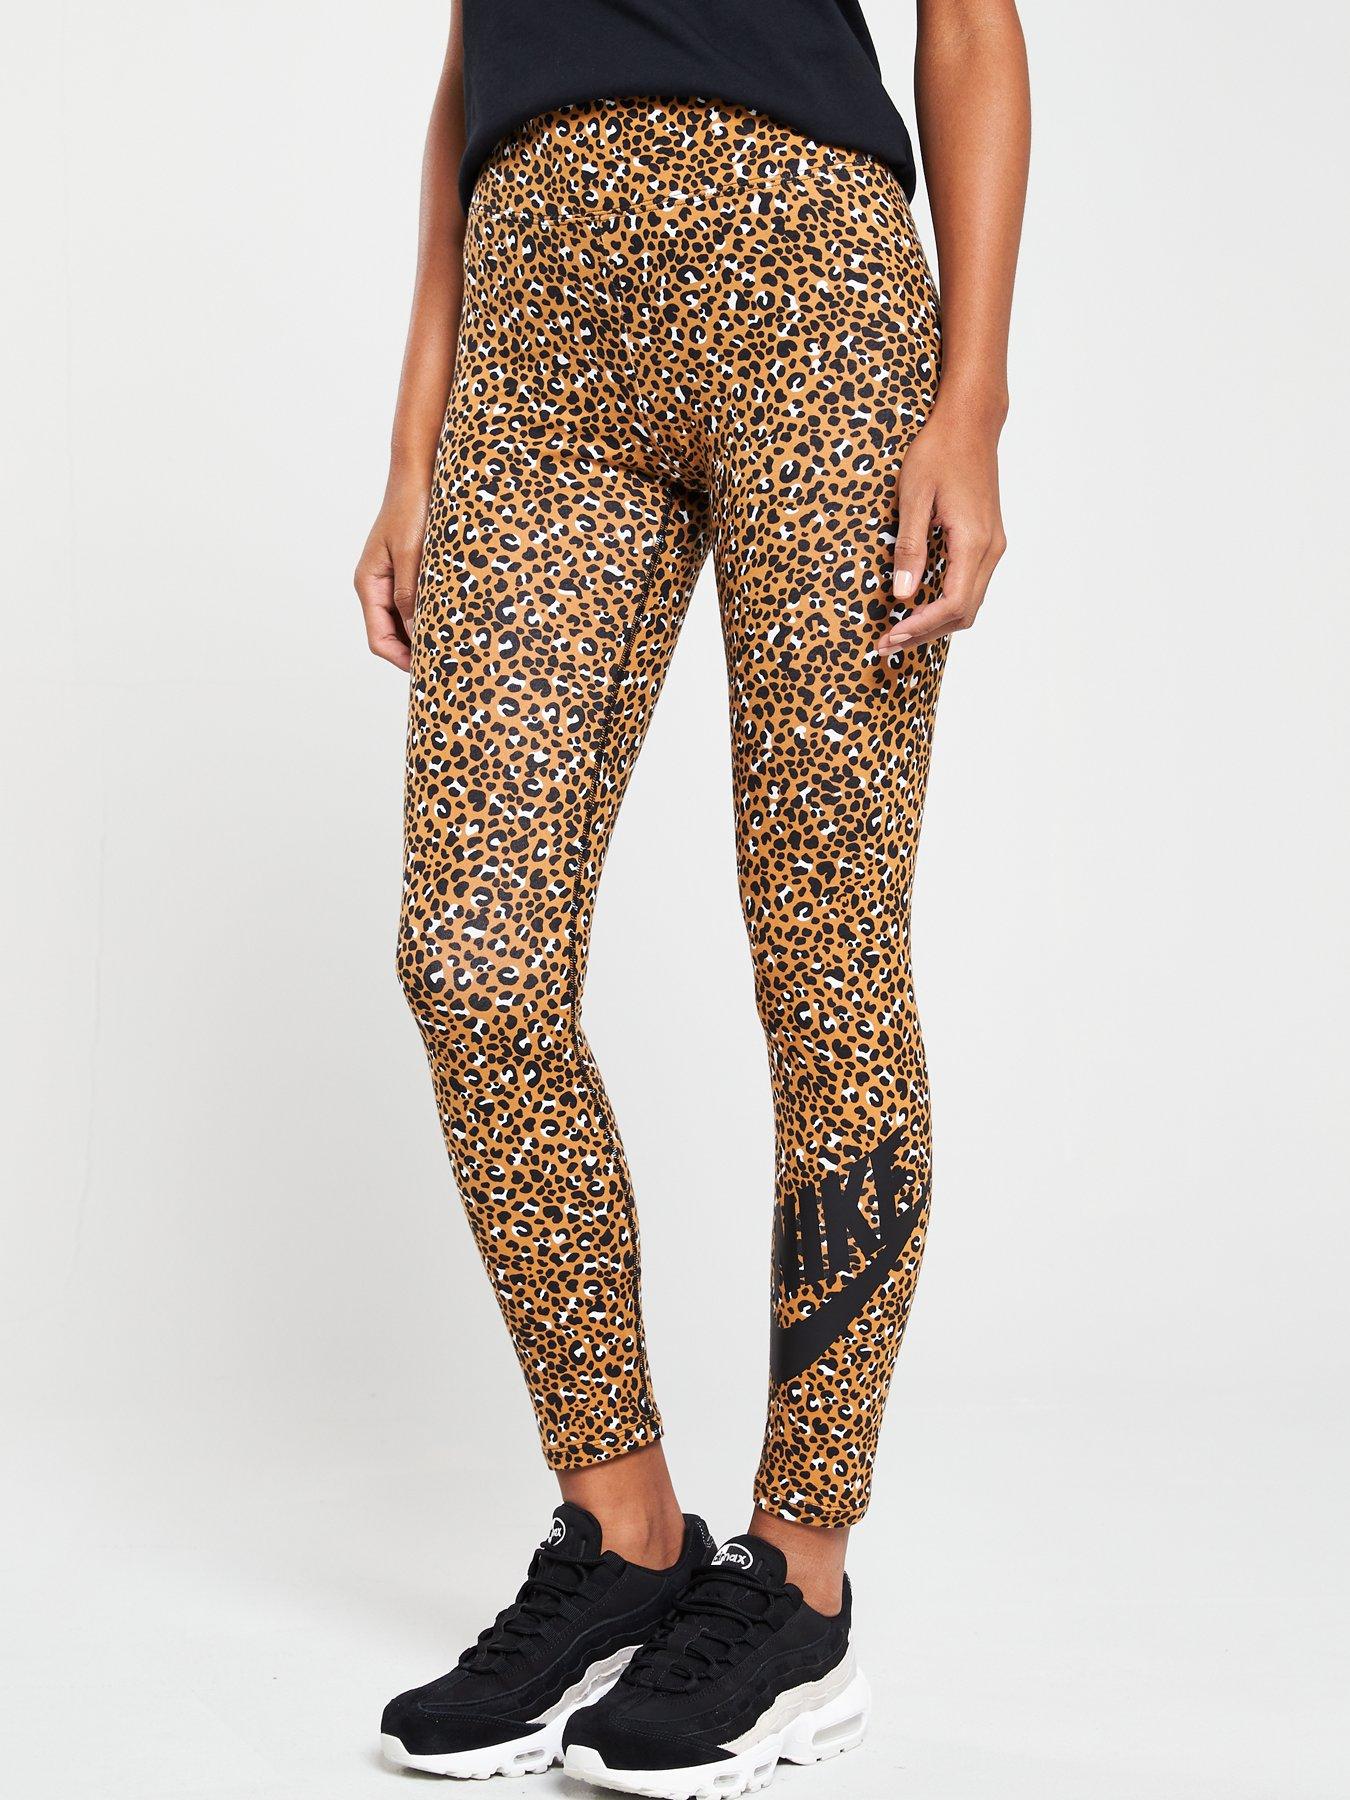 nike leopard leggings